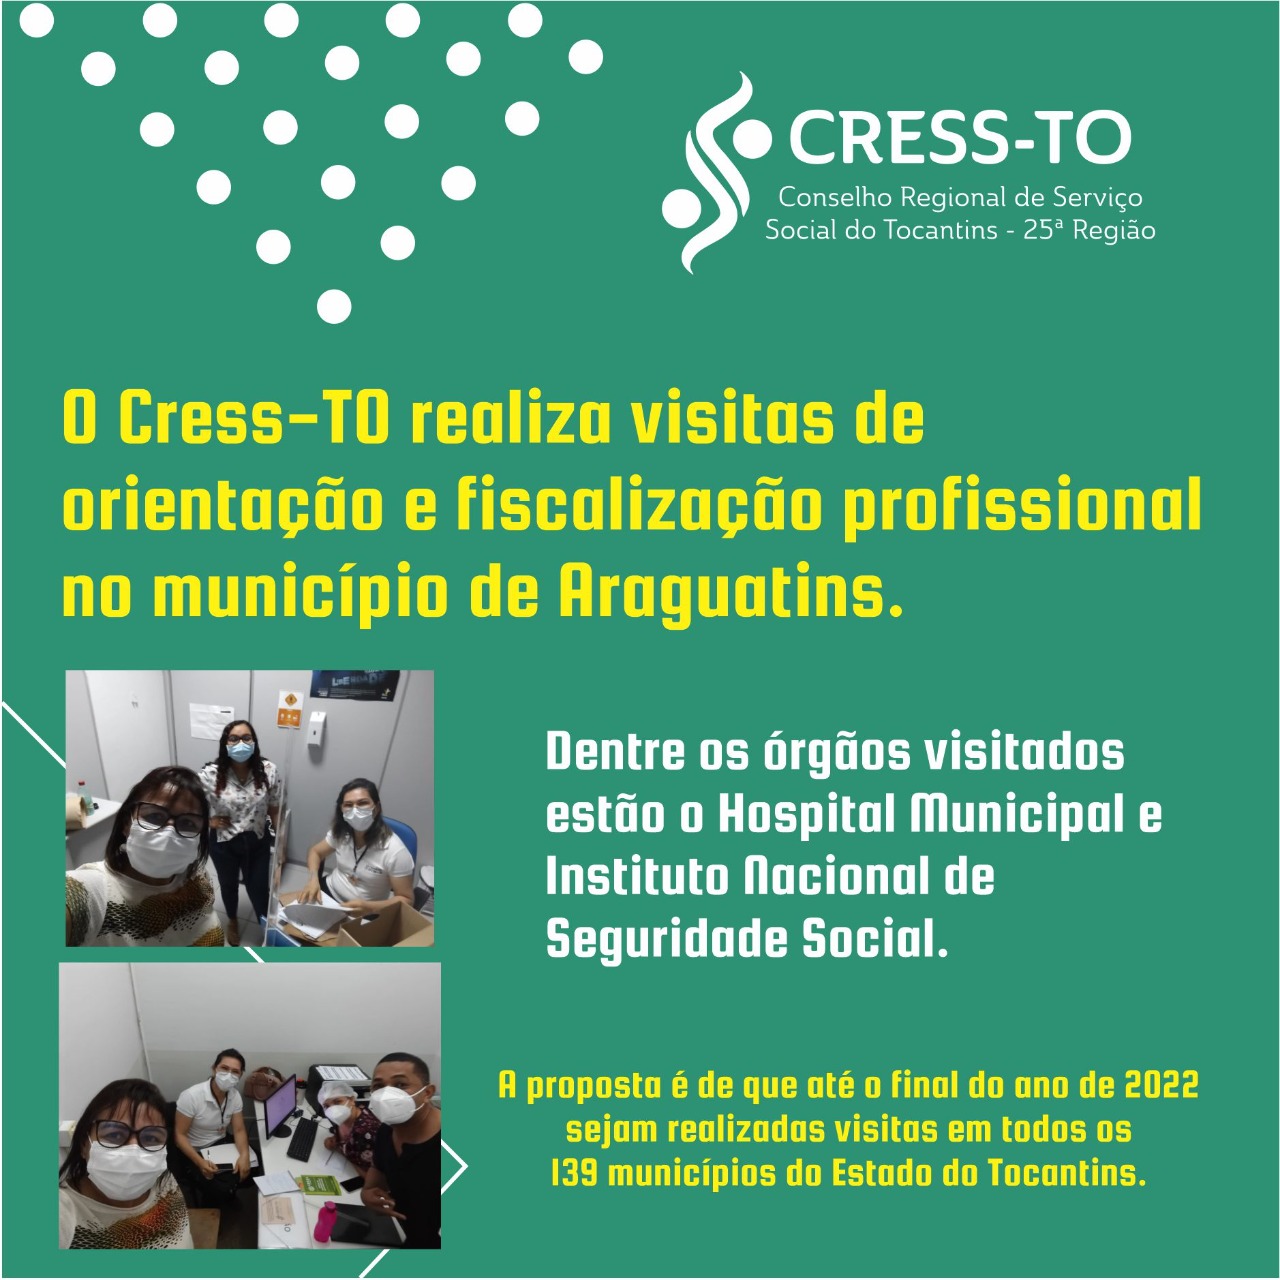 Participe do 17° Encontro de Gerações CRESS/RJ e CBCISS - CRESS